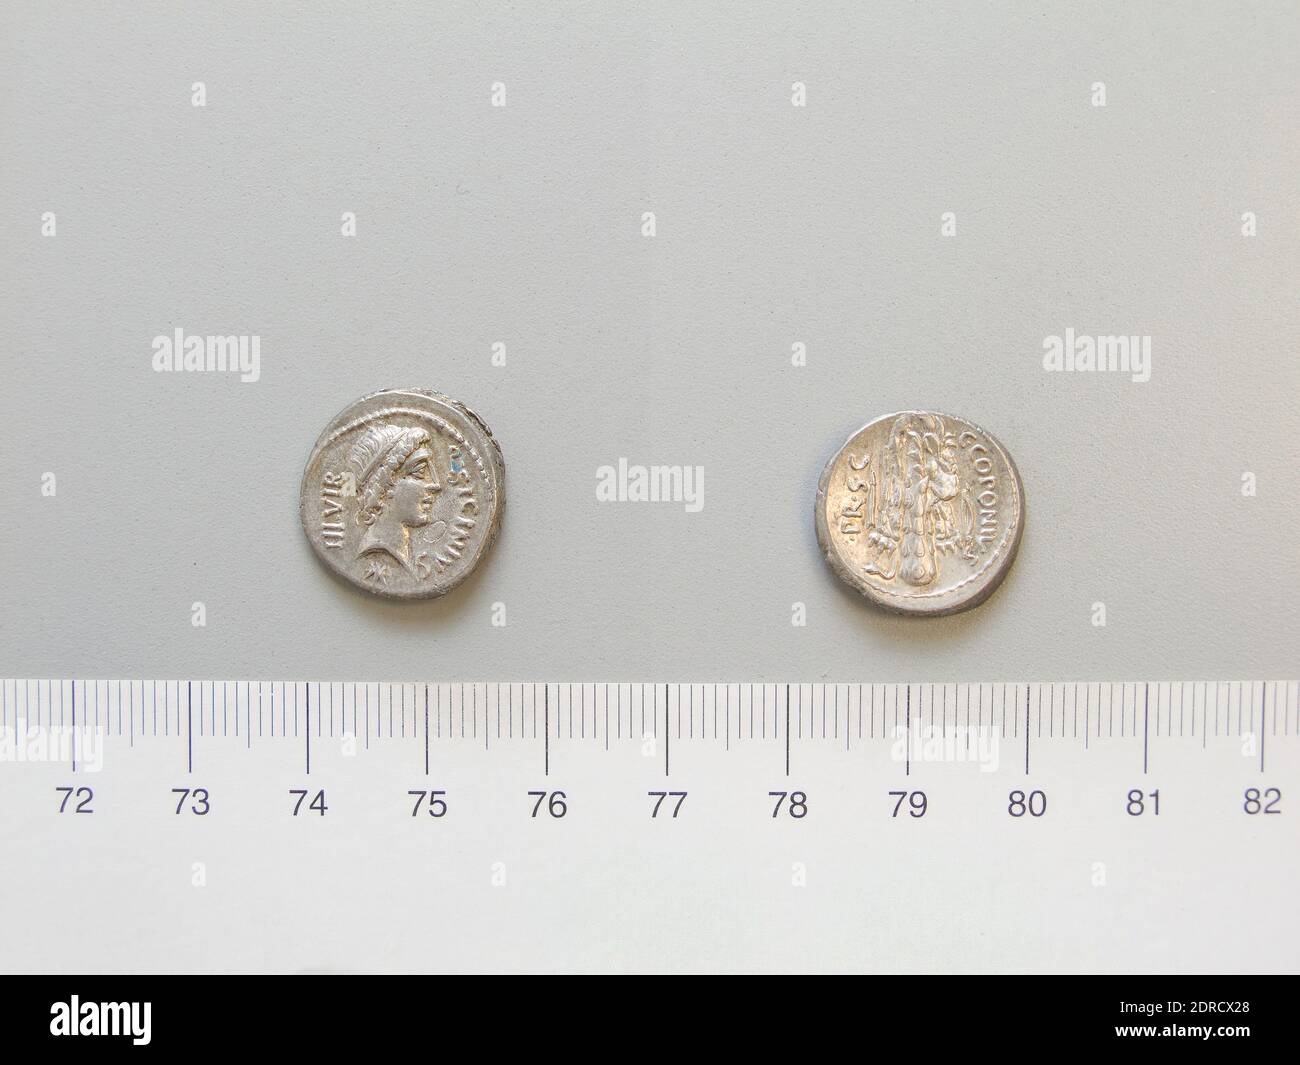 Mint: Moving mint, Magistrate: C. Coponius, Magistrate: Q. Sicinius, Denarius from Moving mint, 49 B.C., Silver, 3.93 g, 2:00, 17.2 mm, Made in Roman Empire, Roman, 1st century B.C., Numismatics Stock Photo